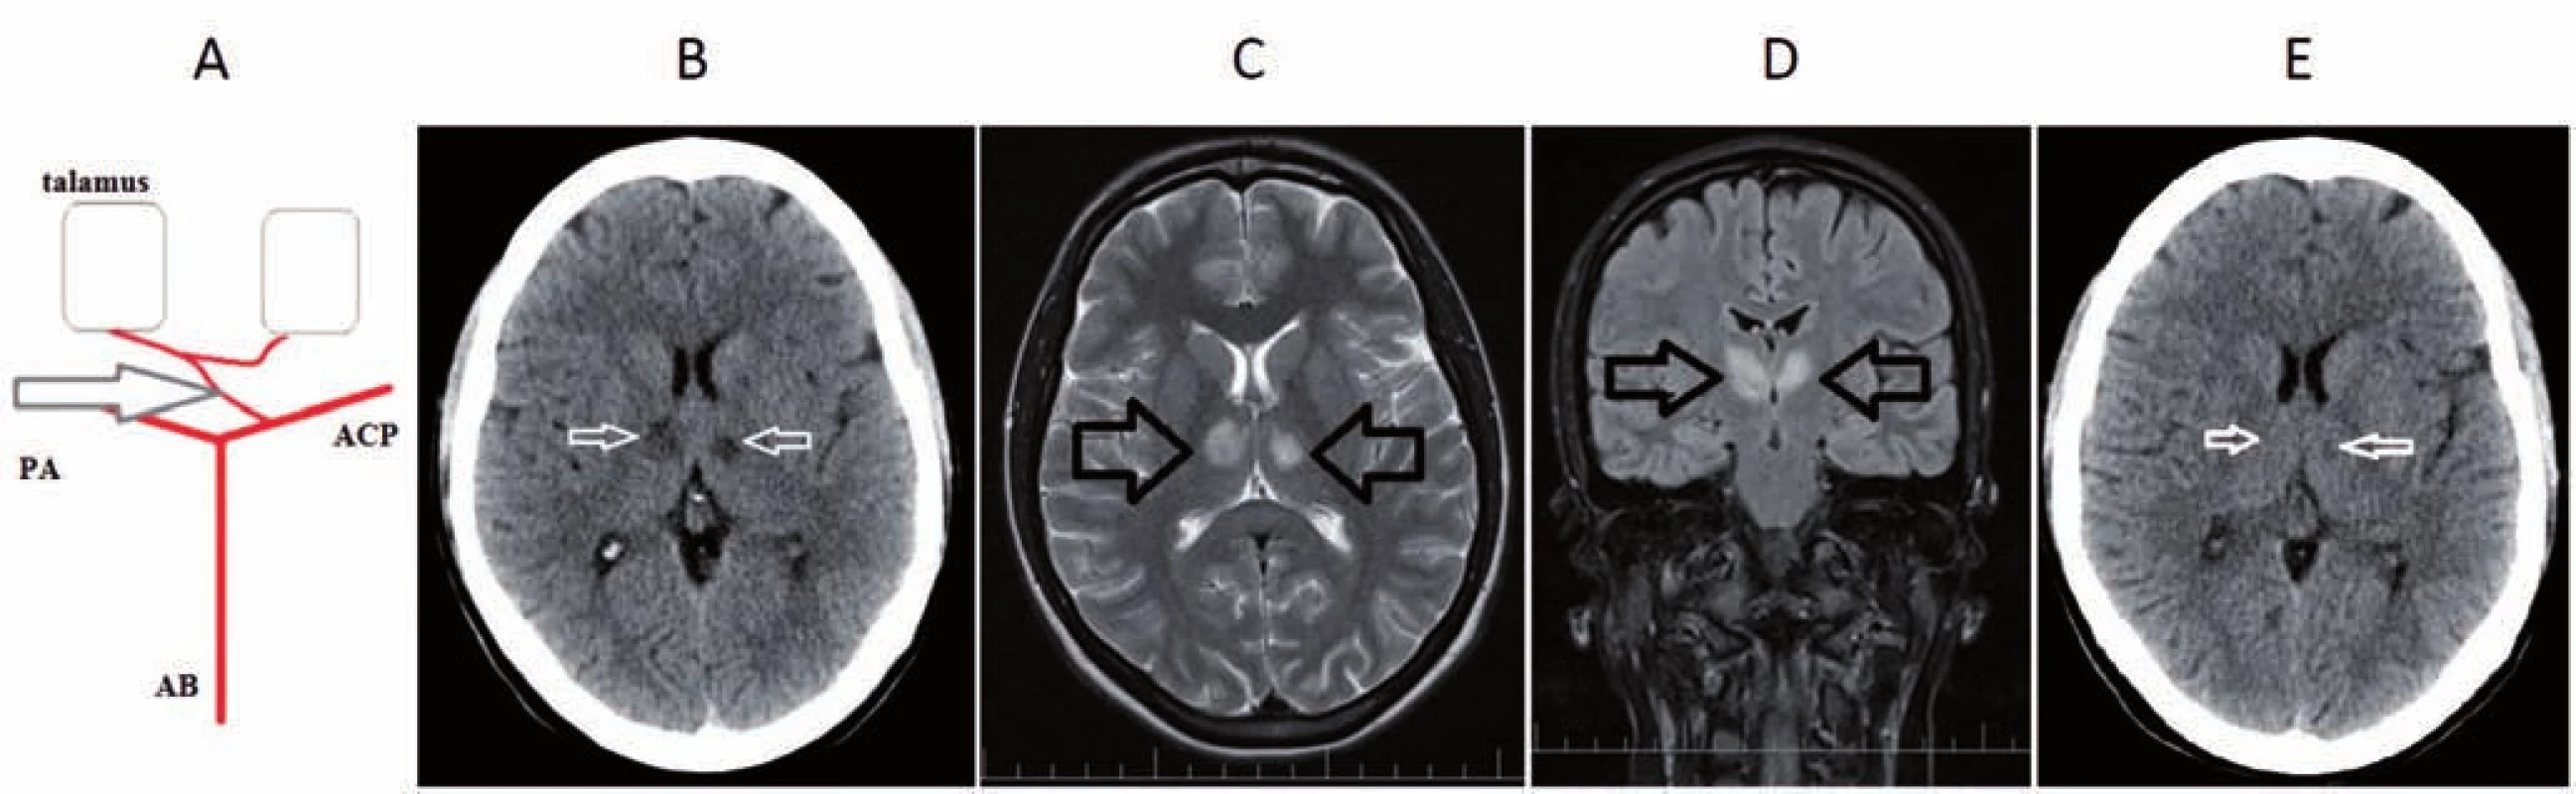 A) Percheronova artéria – anatomický variant v cievnom zásobení talamov. B) CT mozgu s nálezom hypodenzných ložísk
v talame bilaterálne, svedčiace pre čerstvú ischémiu. C, D) MR mozgu T2 sekvencie – C) transverzálne a D) koronárne rezy s nálezom
hyper intenzitných ložísk v paramediálnych častiach oboch talamov asymetrického charakteru, svedčiace pre bilaterálne akútne
ischemické lézie. E) Kontrolná CT mozgu po 7 dňoch, tzv. fogging efekt v oblasti ischémie v paramediálnych častiach talamov bilaterálne.
AB – arteria basilaris; ACP – arteria cerebri posterior; PA – Percheronova artéria<br>
Fig. 1. A) Percheron artery – an anatomical variant in the blood supply of the thalamus on both sides. B) Brain CT scan with the finding
of bilateral thalamic hypodense lesions suggesting acute ischemia. C, D) Brain MRI scan – C) transversal and D) coronal T2-weighted
with the finding of bilateral asymmetrical hyperintense lesions in paramedial area of the thalamus suggesting acute ischemia.
E) Follow-up brain CT scan after 7 days with the finding of a bilateral fogging effect in paramedial areas of the thamalus.
AB – basilar artery; ACP – posterior cerebral artery; PA – Percheron artery